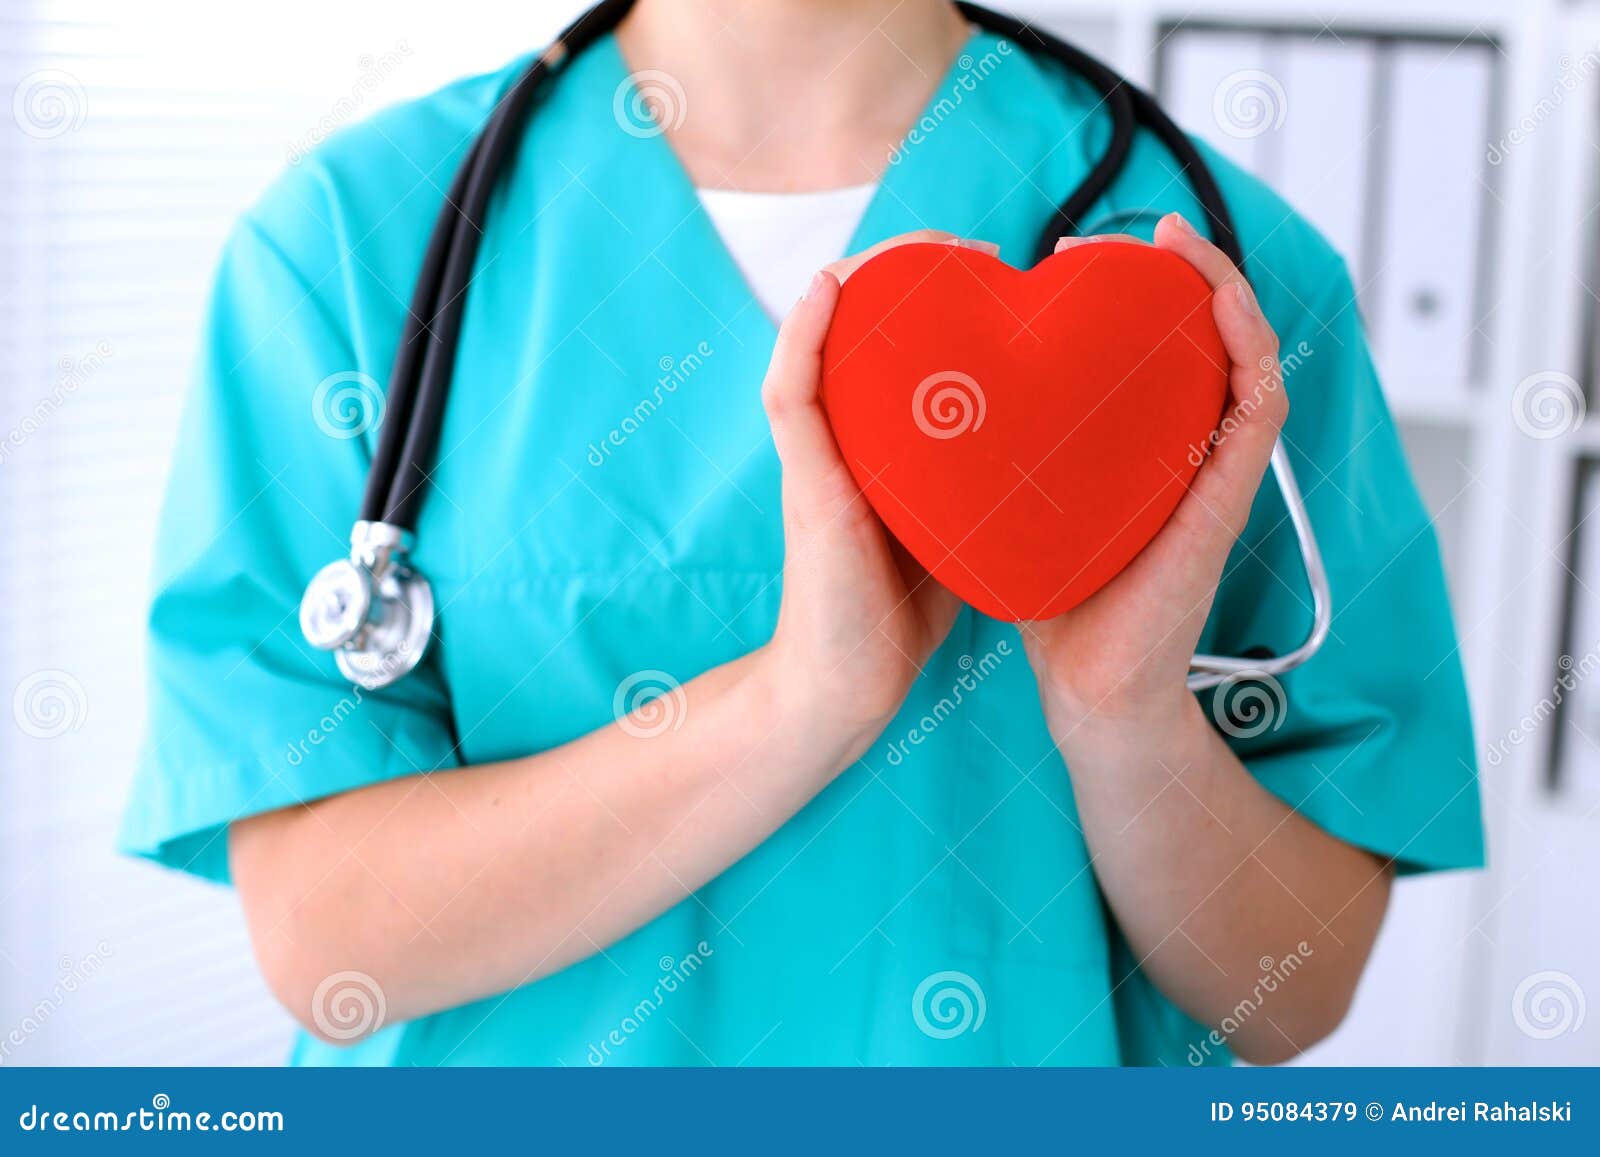 Вопрос врачу хирургу. Врач держит сердечко. Врач хирург с сердечком. Врач хирург женщина с сердцем.